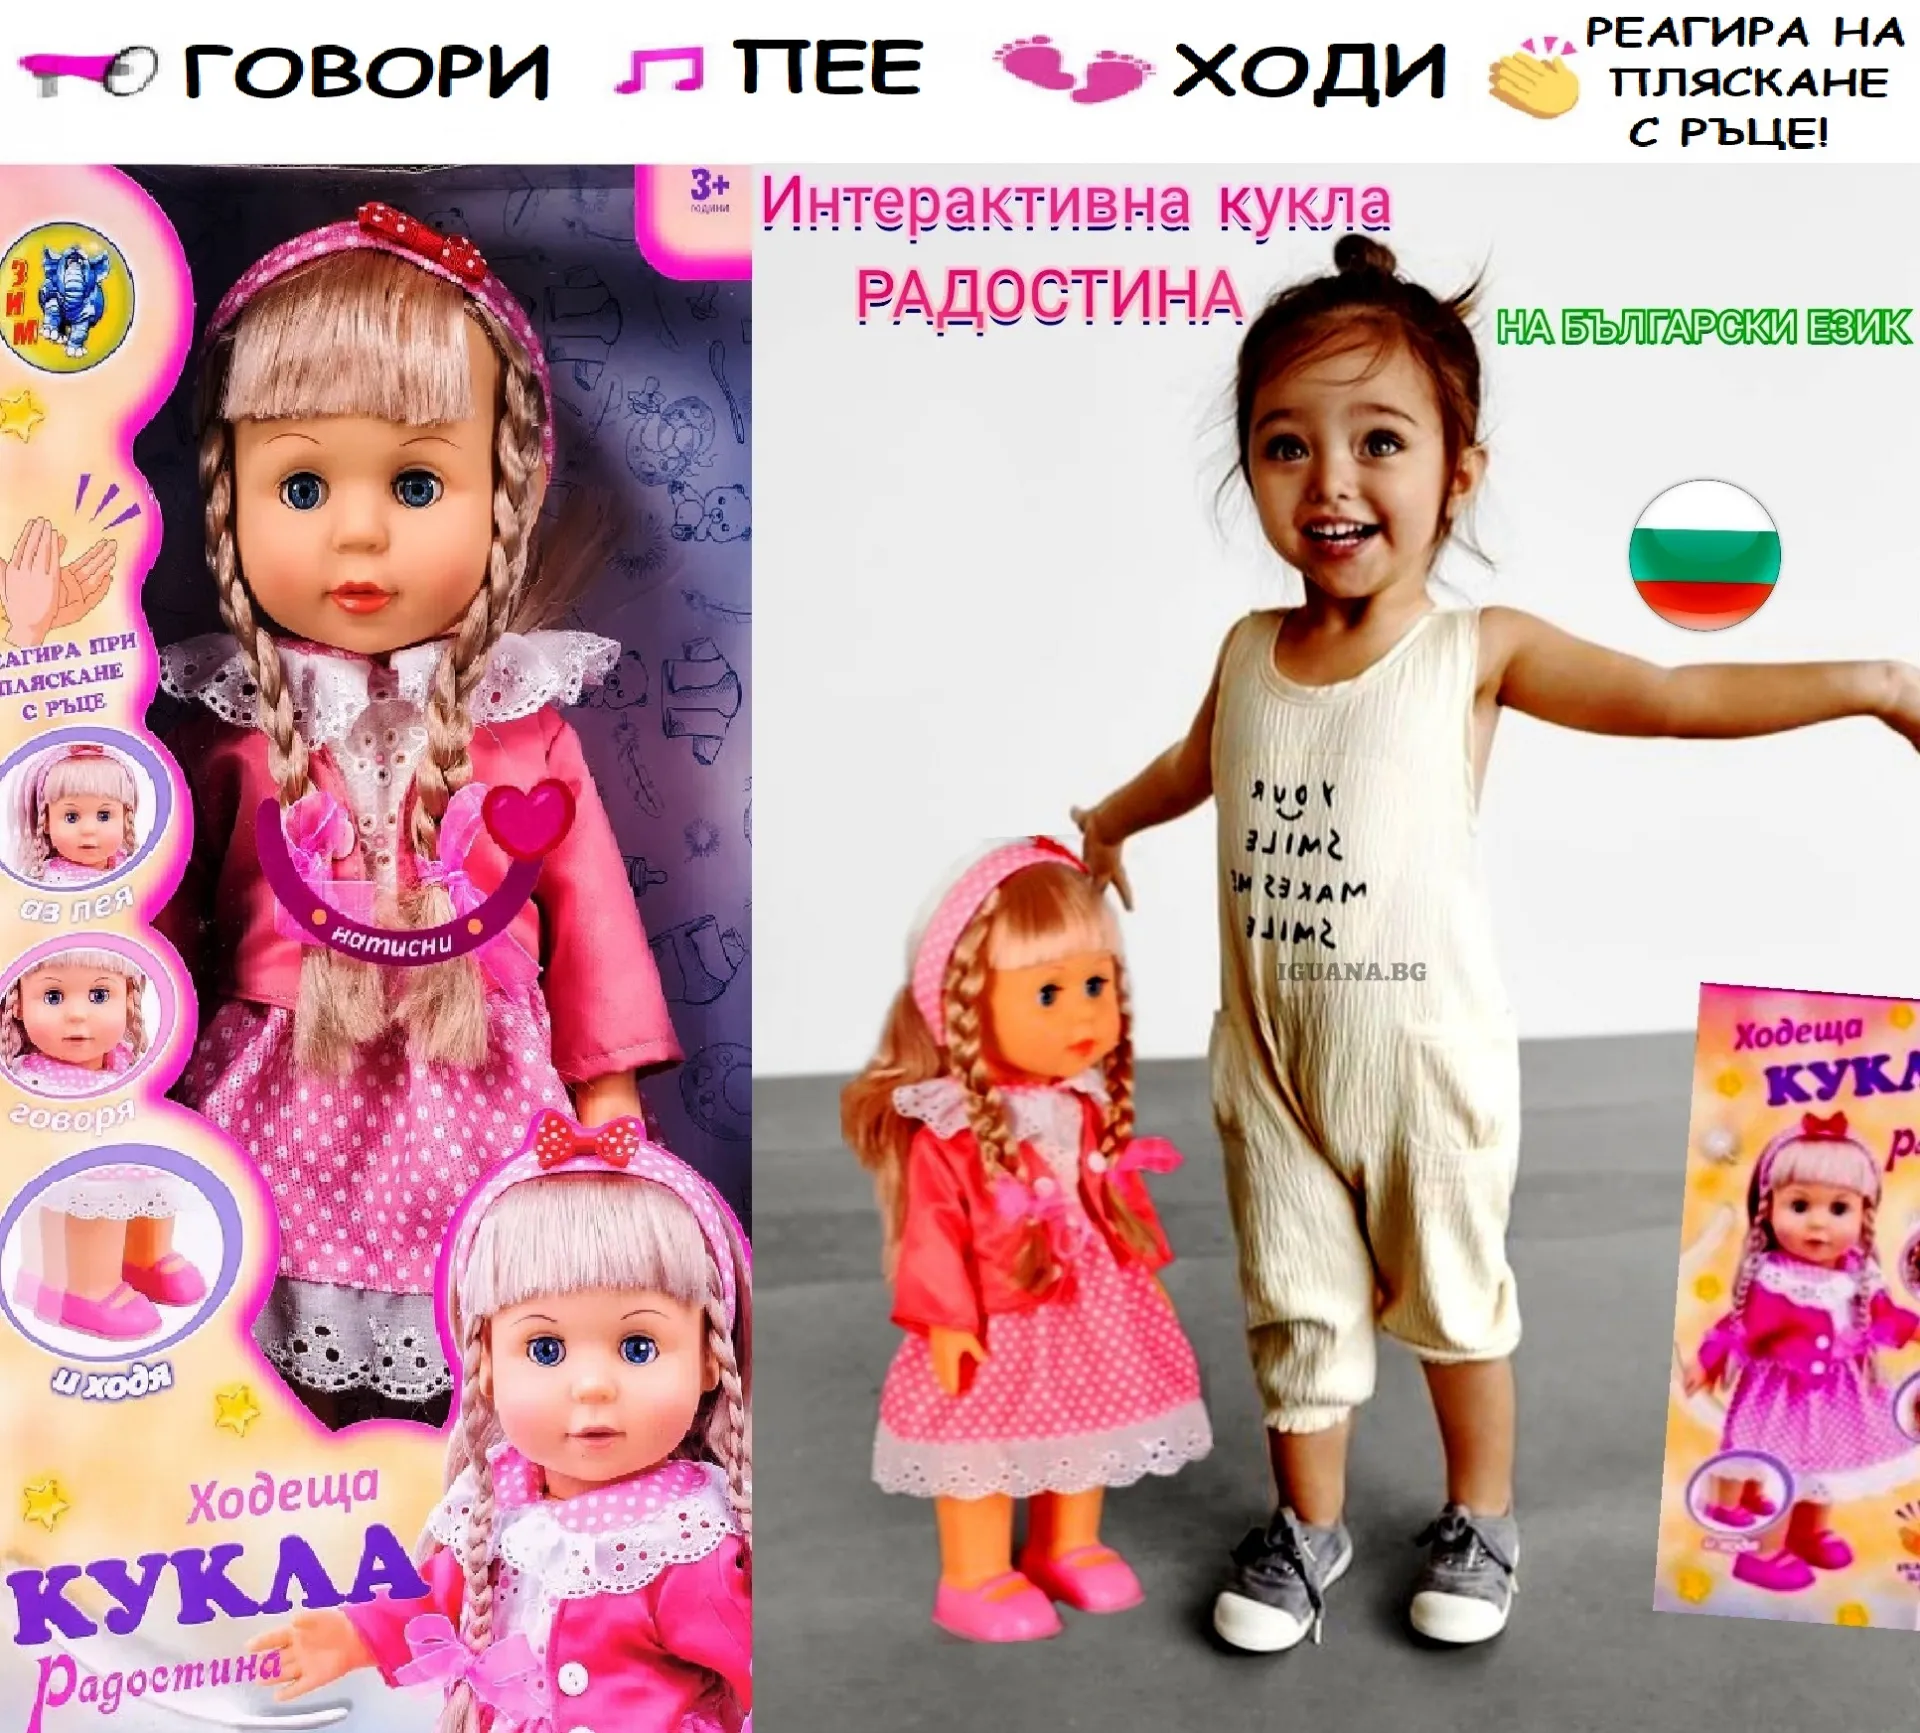 Интерактивна кукла Радостина, ходеща, пееща и говореща на БЪЛГАРСКИ ЕЗИК, височина 42см 10